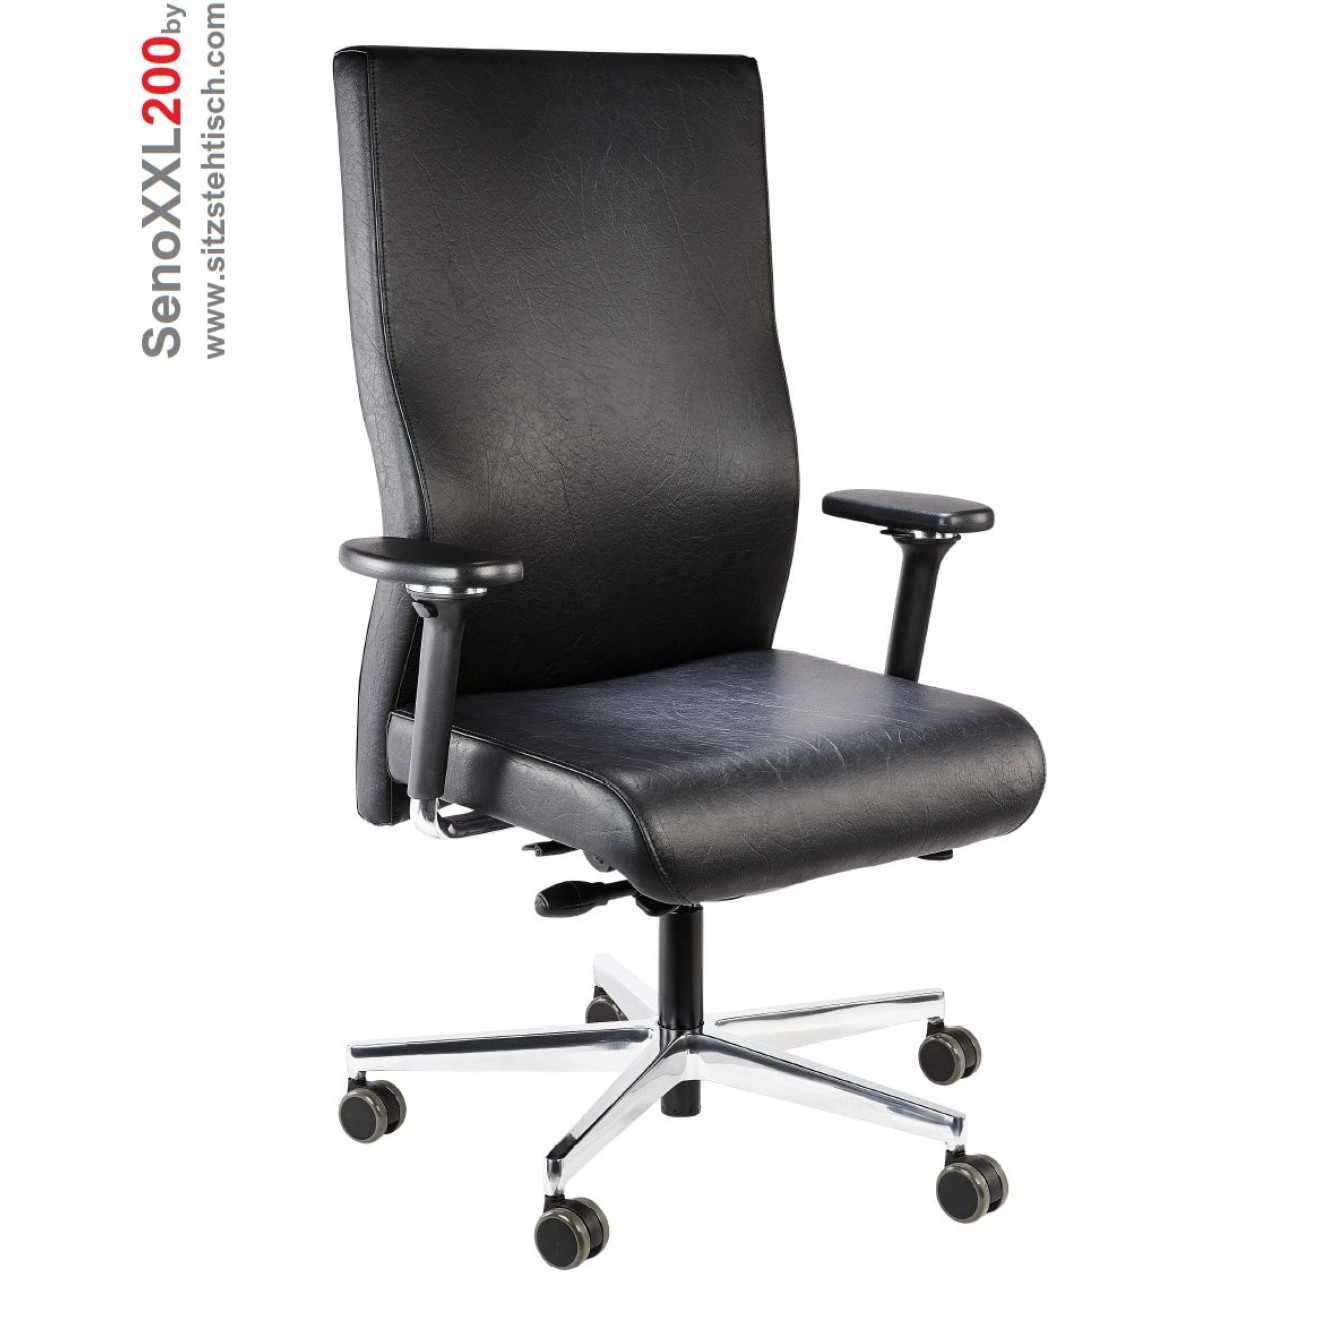 Bürostuhl Seno XXL - Belastbarkeit bis 200 kg - Synchronmechanik, Sitztiefenverstellung, Armlehnen extra hohe Rückenlehne - 5 Jahre Garantie - Farbe Schwarz